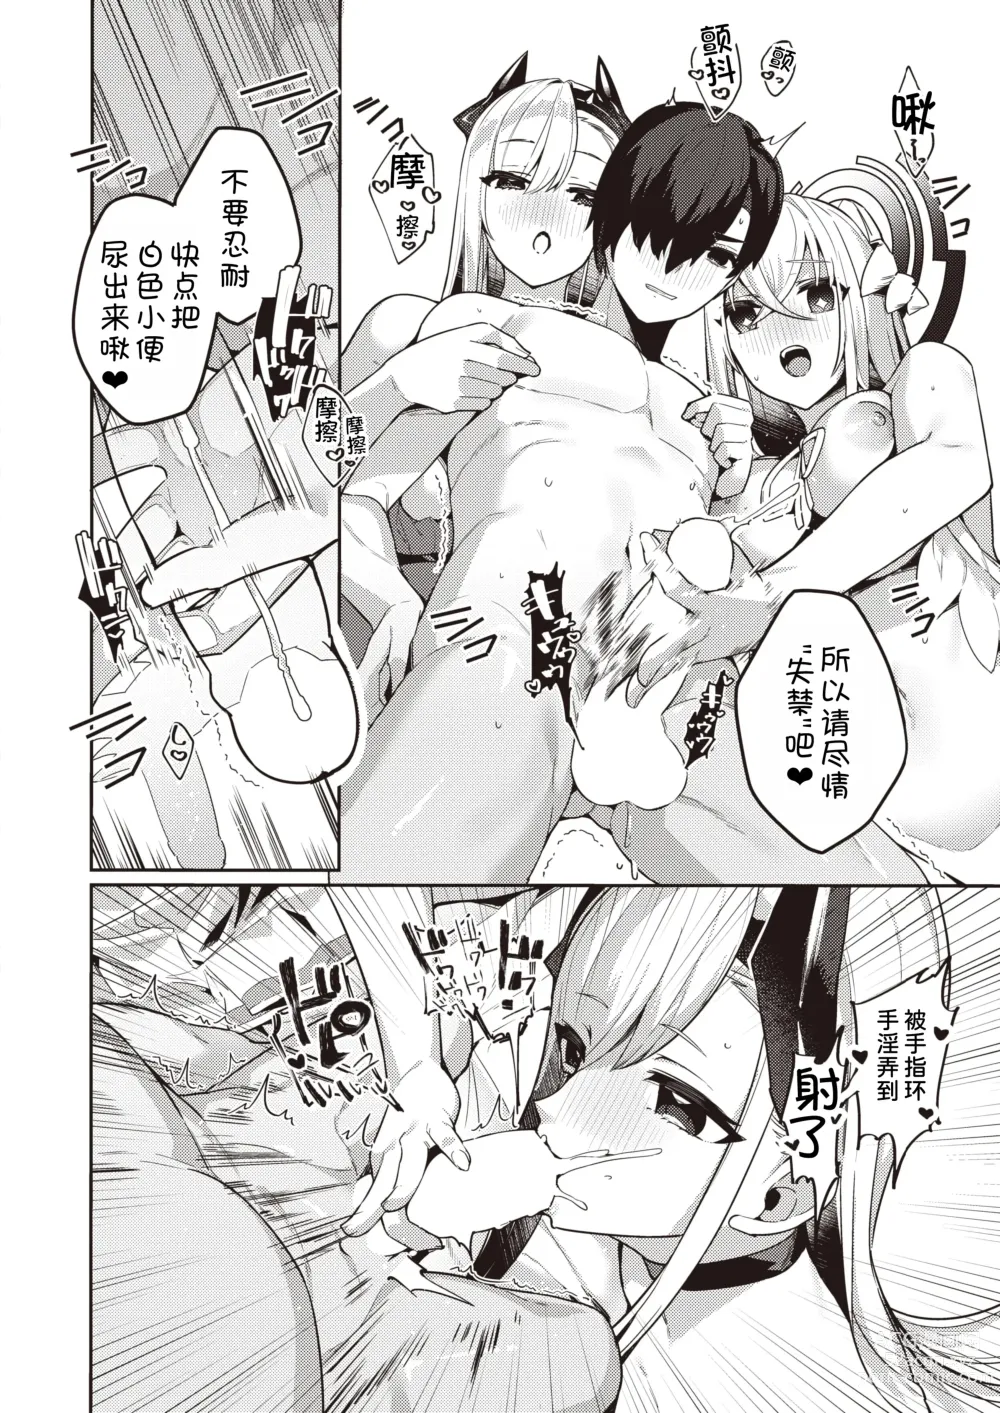 Page 9 of manga Chotto Yabai Megami to Maou to Amayakababubabu Suru no wa Dame desu ka?